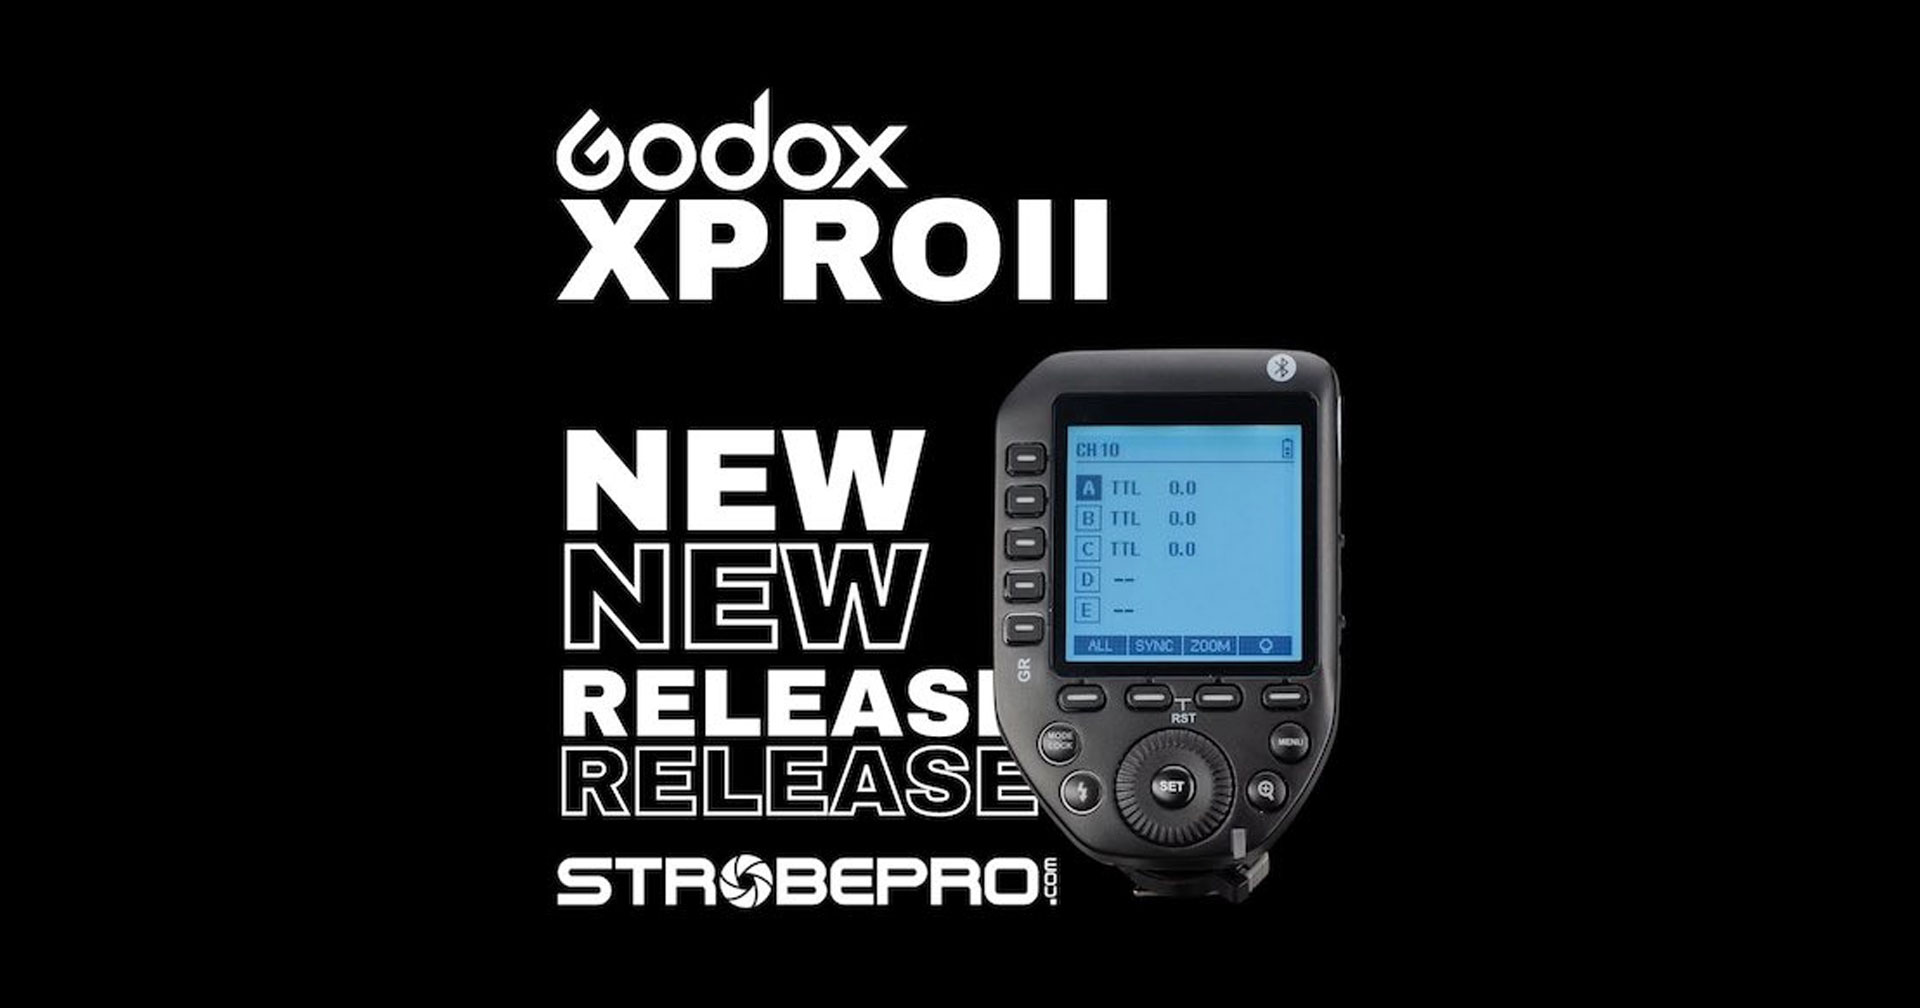 Godox XPRO II Wireless Flash Trigger สำหรับกล้อง Canon, Nikon, Sony เพิ่มฟีเจอร์ใหม่เพียบ